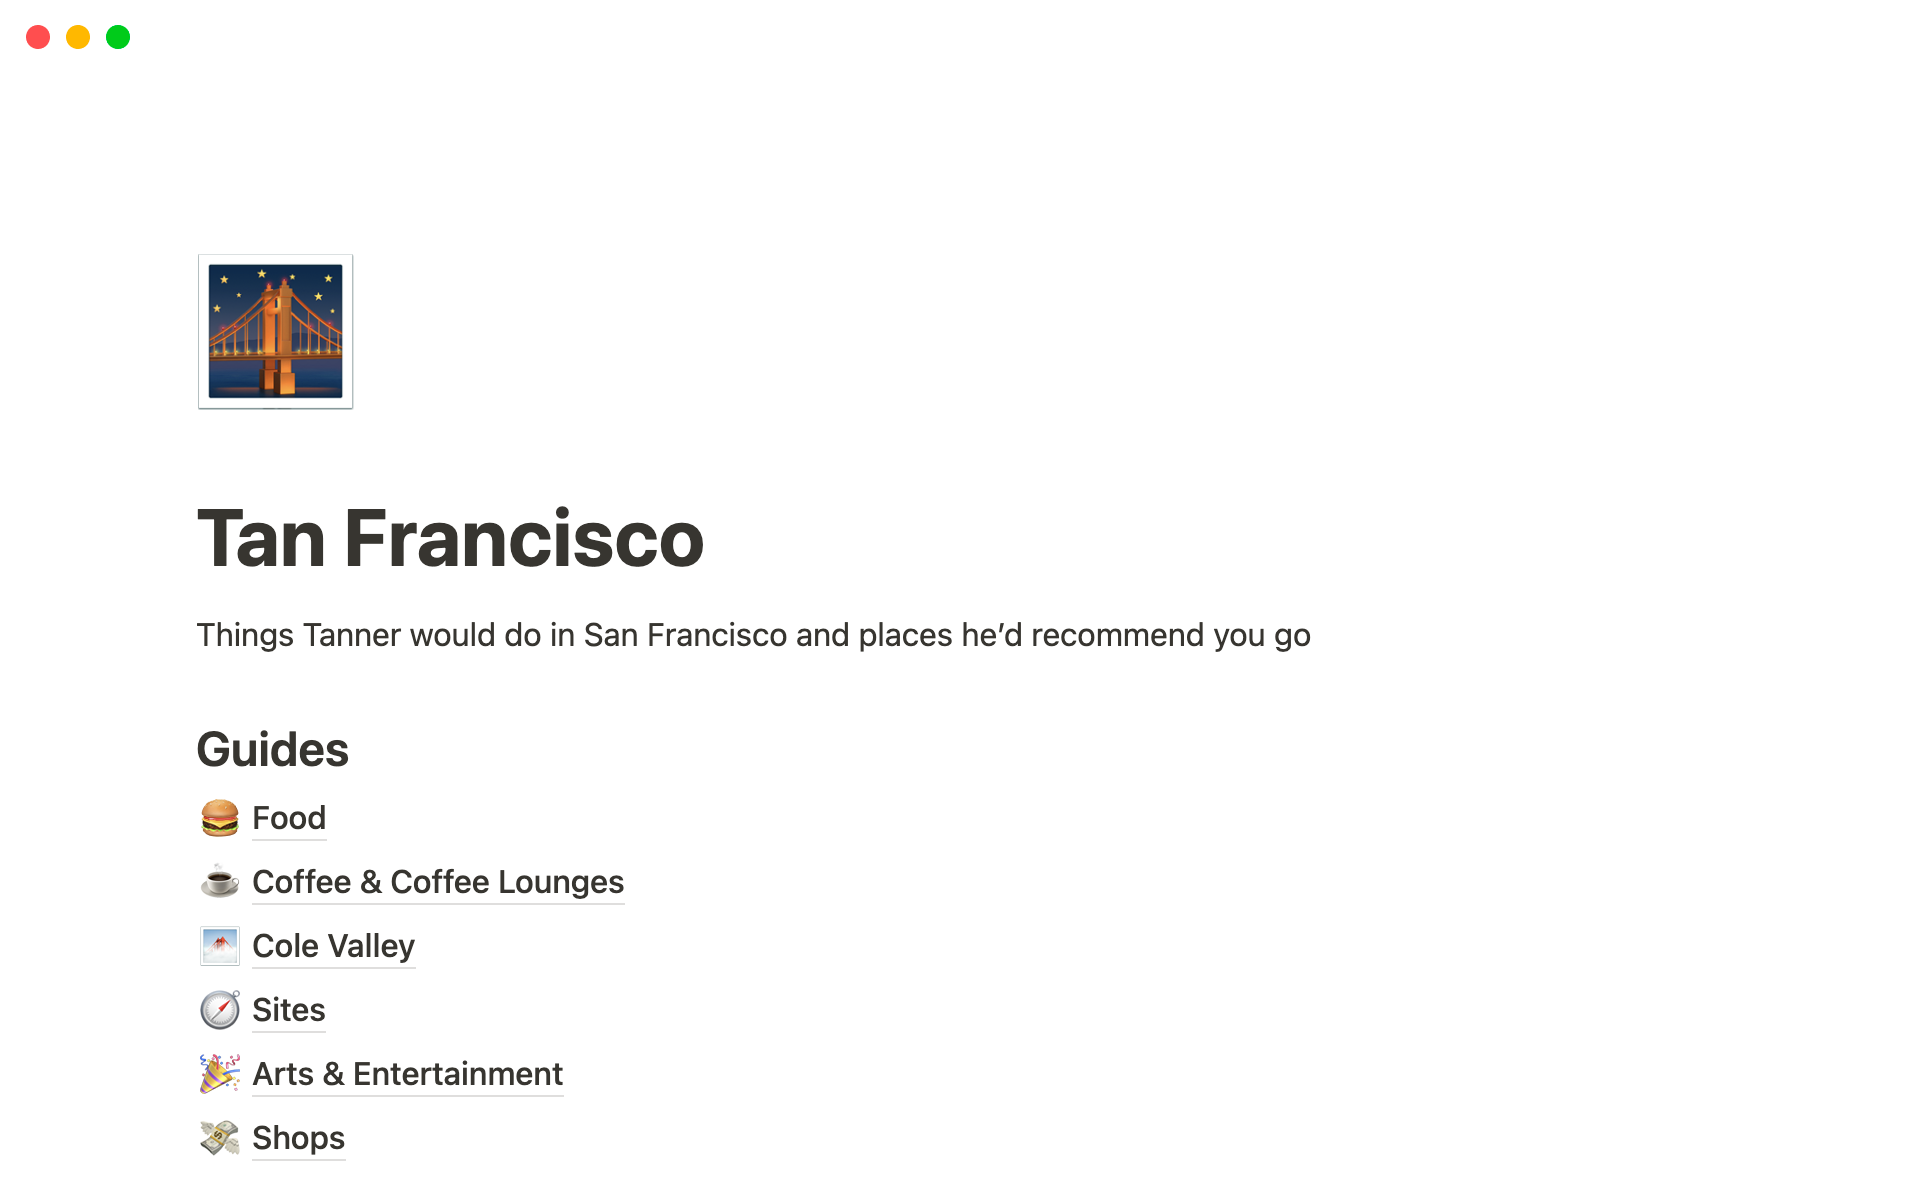 Uma prévia do modelo para Tan Francisco — Tanner's Guide To San Francisco